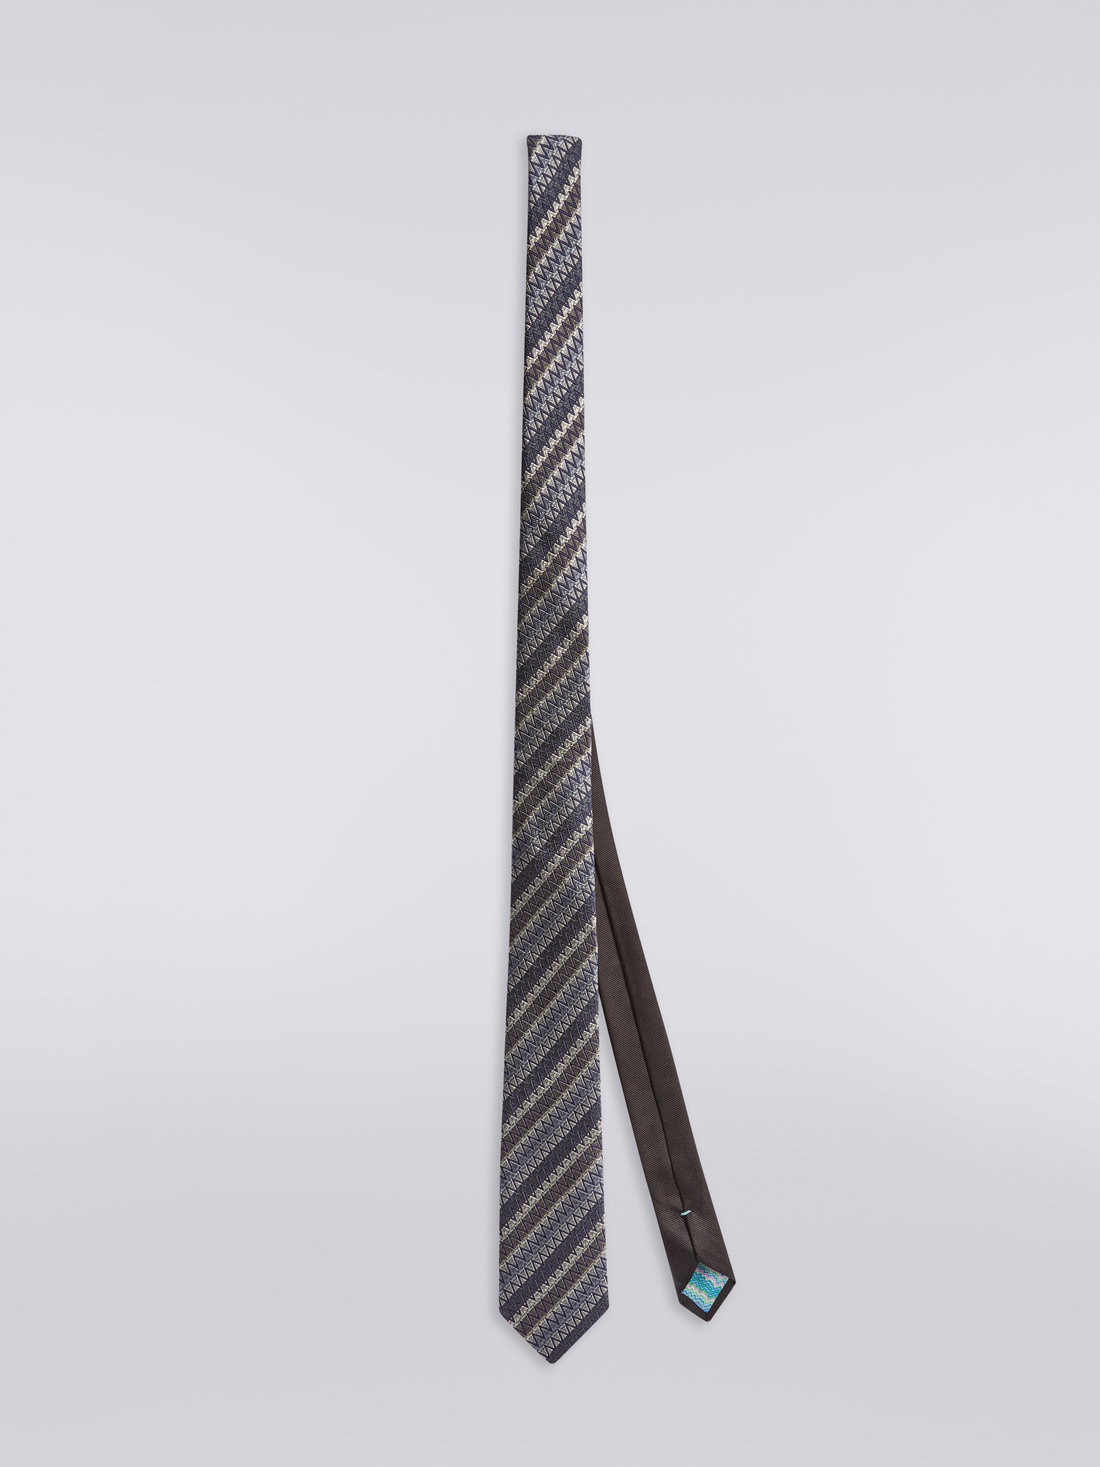 Cravatta in seta con righe oblique e zig zag, Multicolore - 8051575919893 - 0